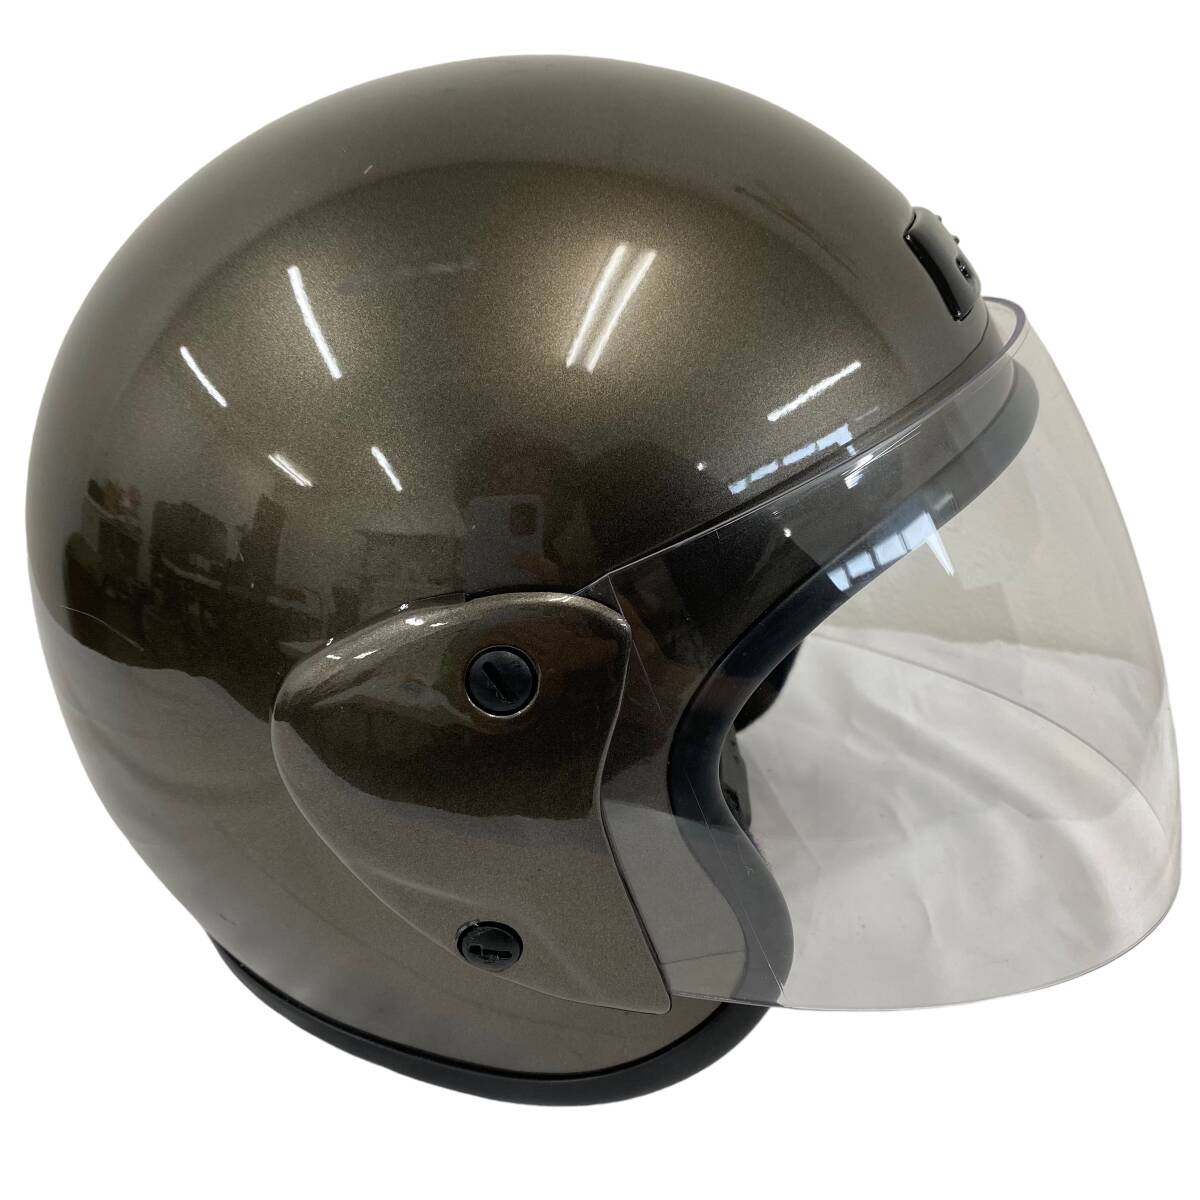 [ быстрое решение ] Uni машина промышленность BH-30G шлем свободный размер серый серия пепел серия 8548-100